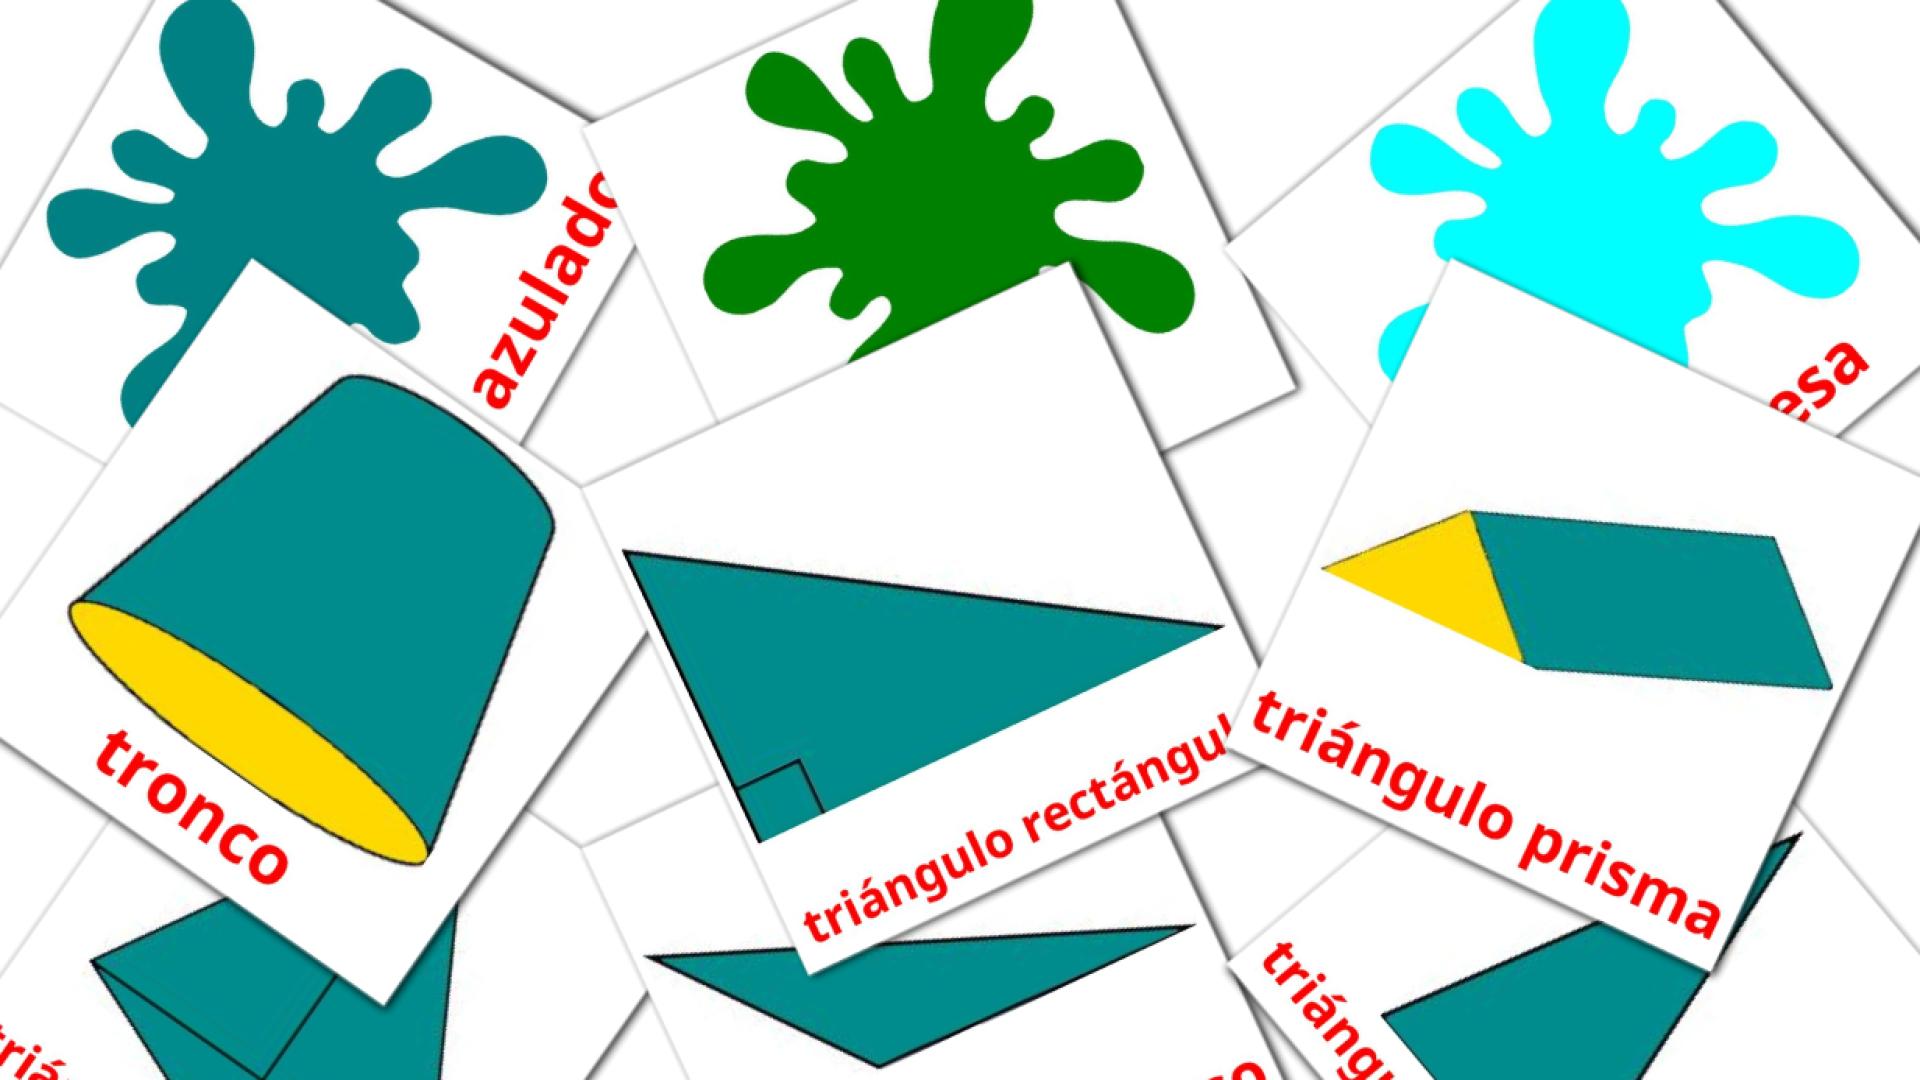 Colores y formas spanish vocabulary flashcards